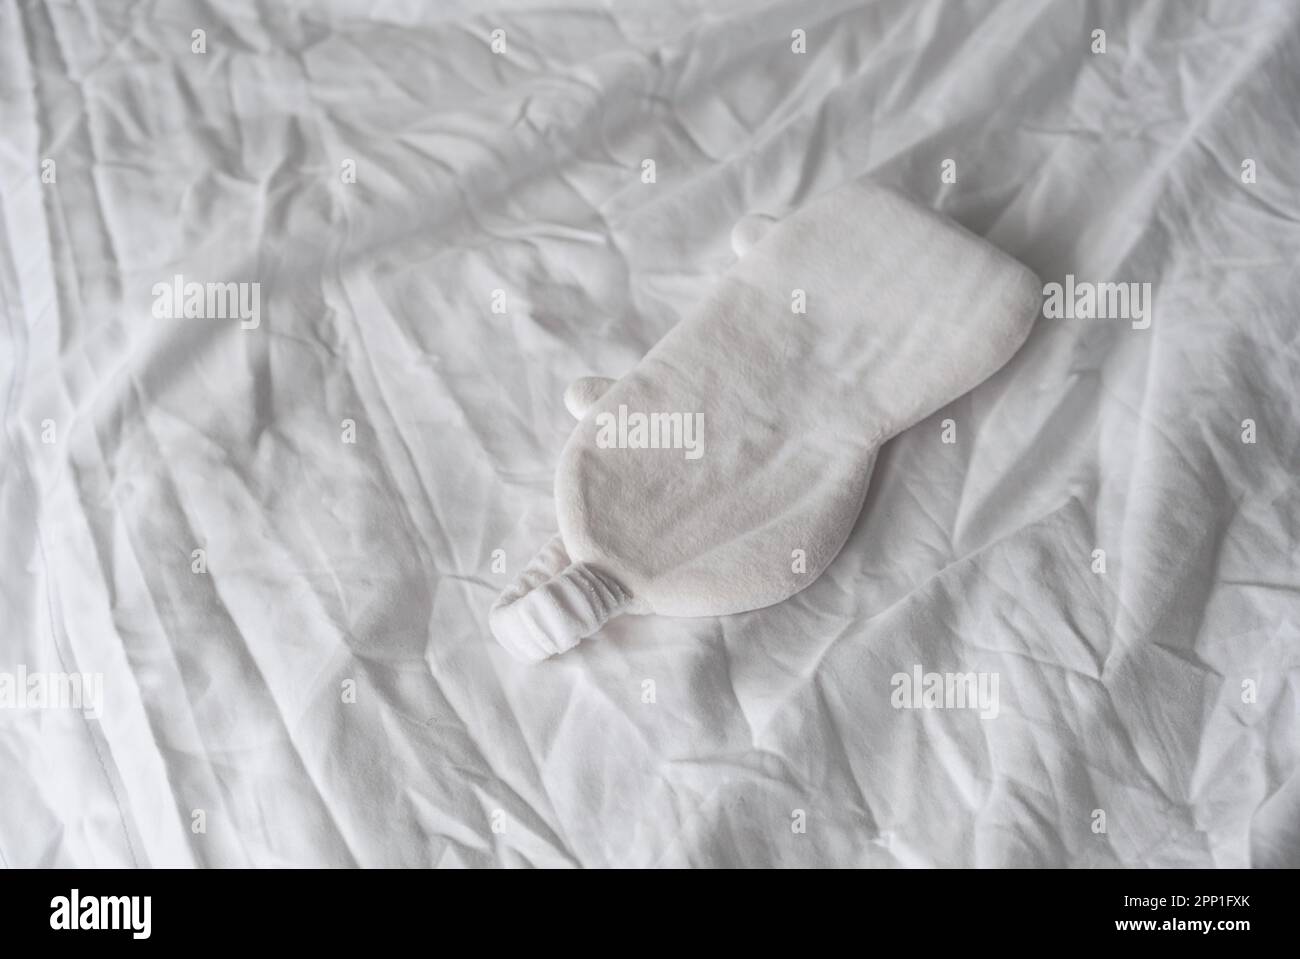 Masque de sommeil reposant sur une literie blanche. Concept d'aou d'insomnie. Banque D'Images